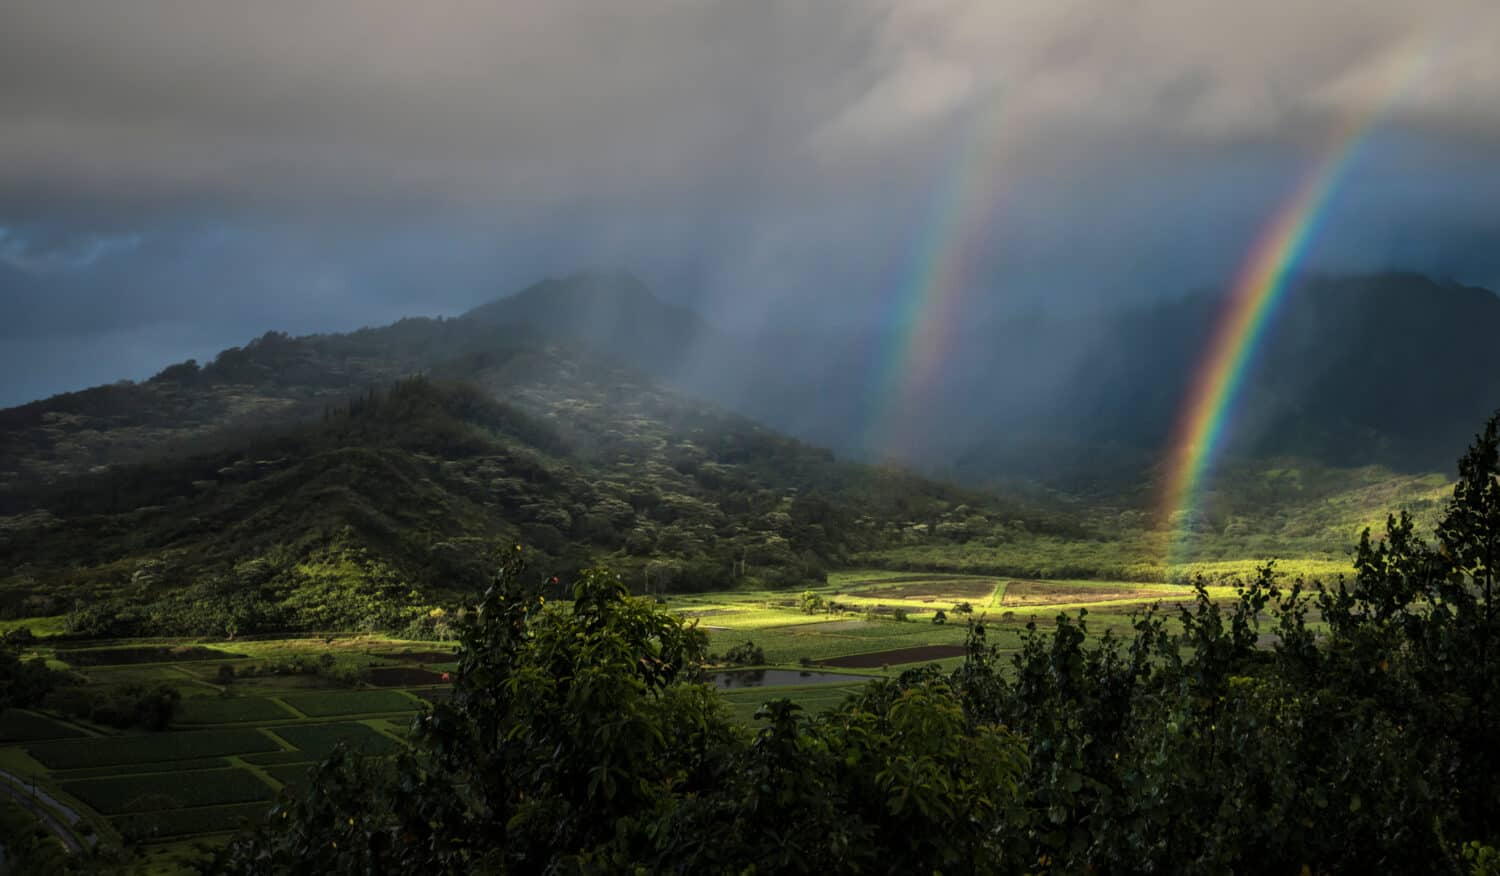 Double rainbow and sunbeams illuminate the taro fields at Kauai's Hanalai overlook.